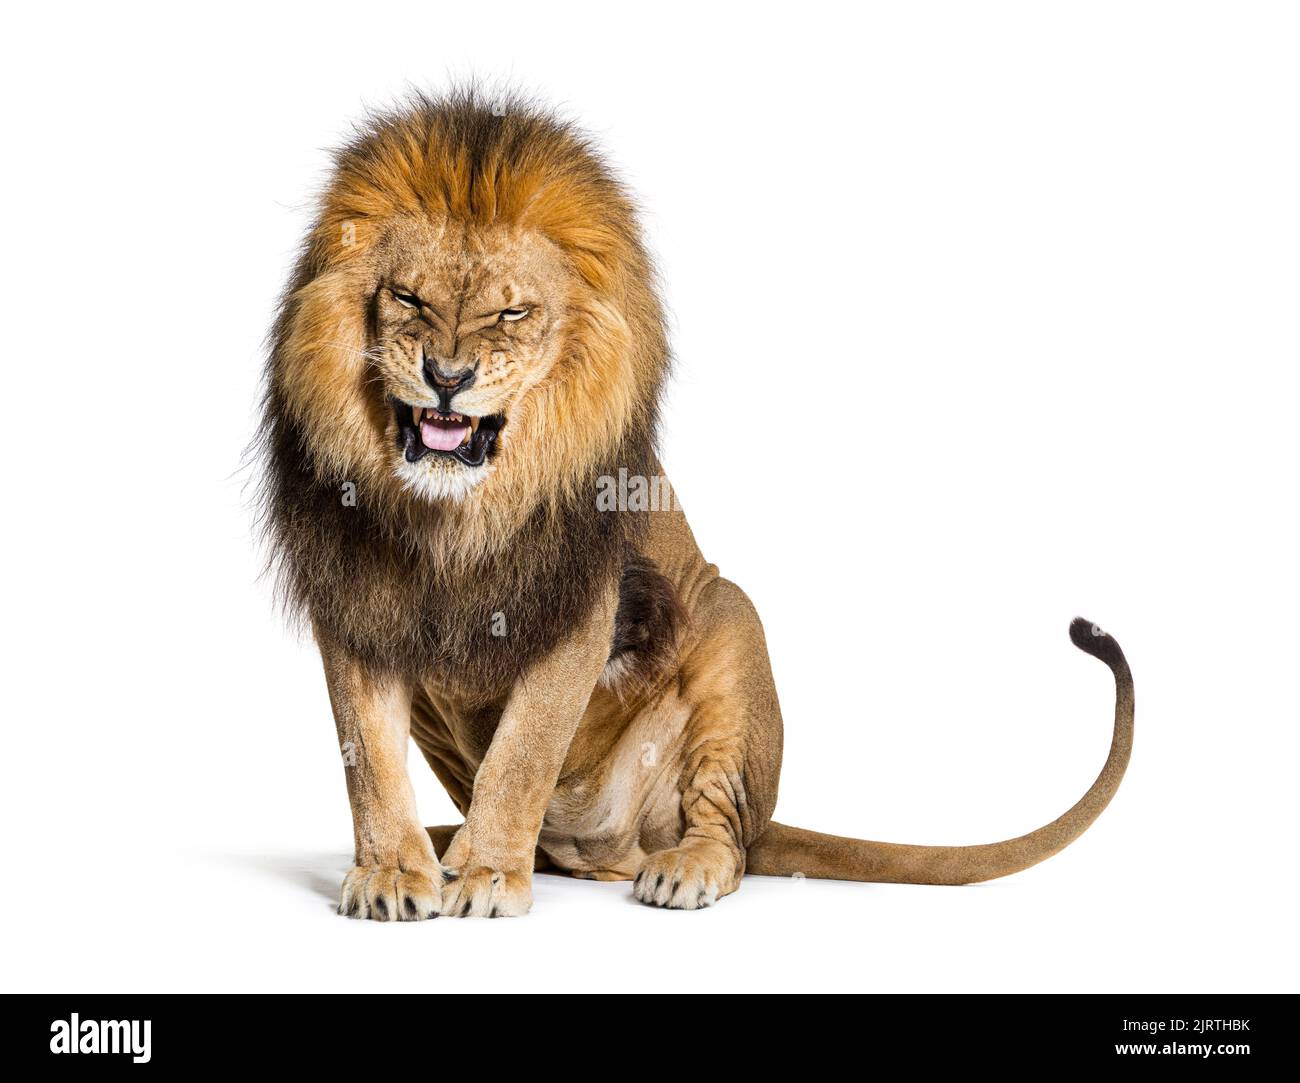 Lion tira un volto e guarda la fotocamera, isolato su bianco Foto Stock